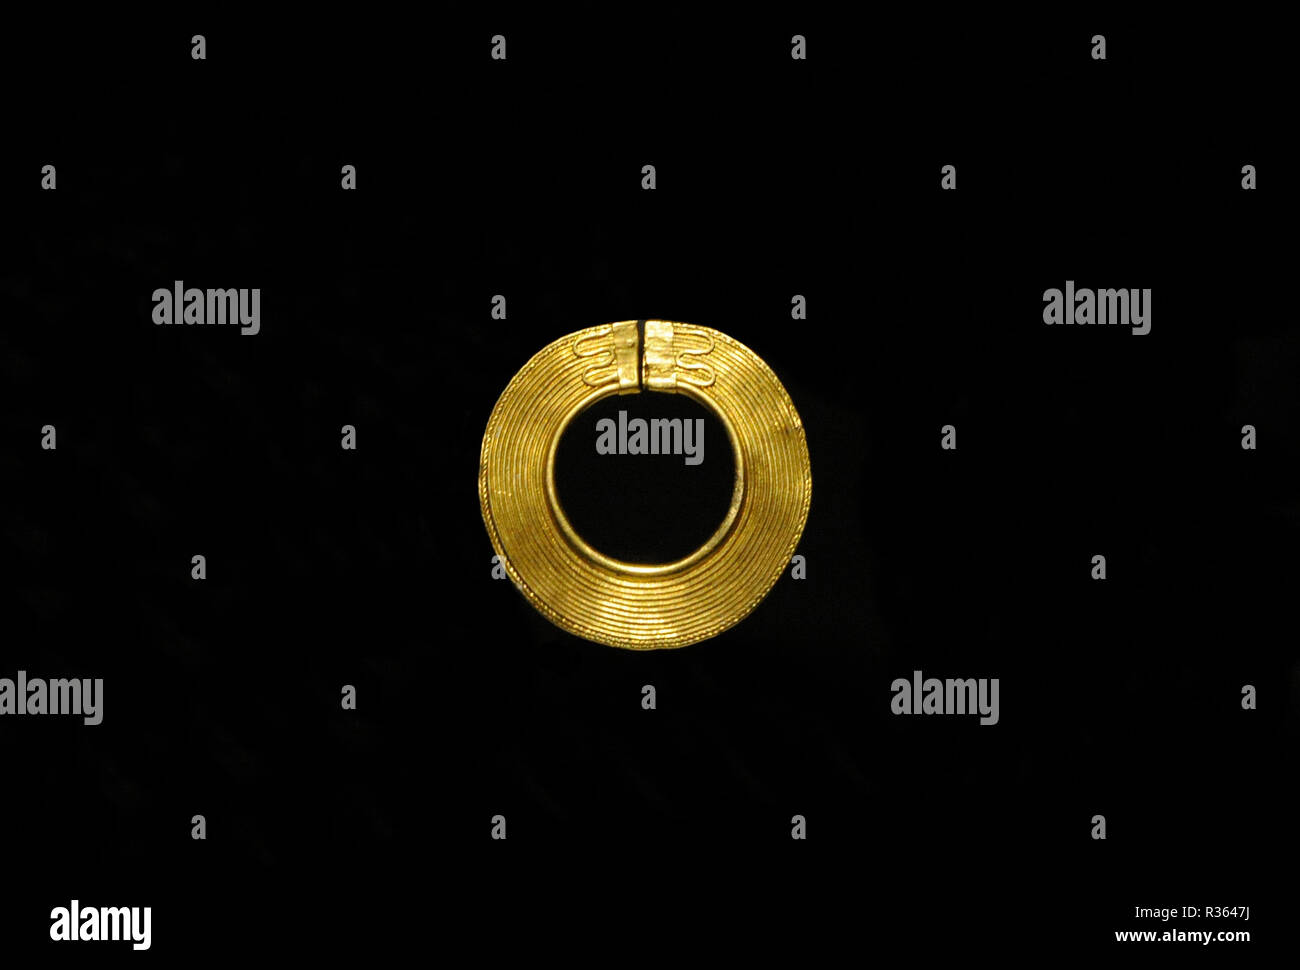 Disque d'or. 1000-801 BC. Fin de l'âge du Bronze. L'Estrémadure. Musée Archéologique National. Madrid. L'Espagne. Banque D'Images